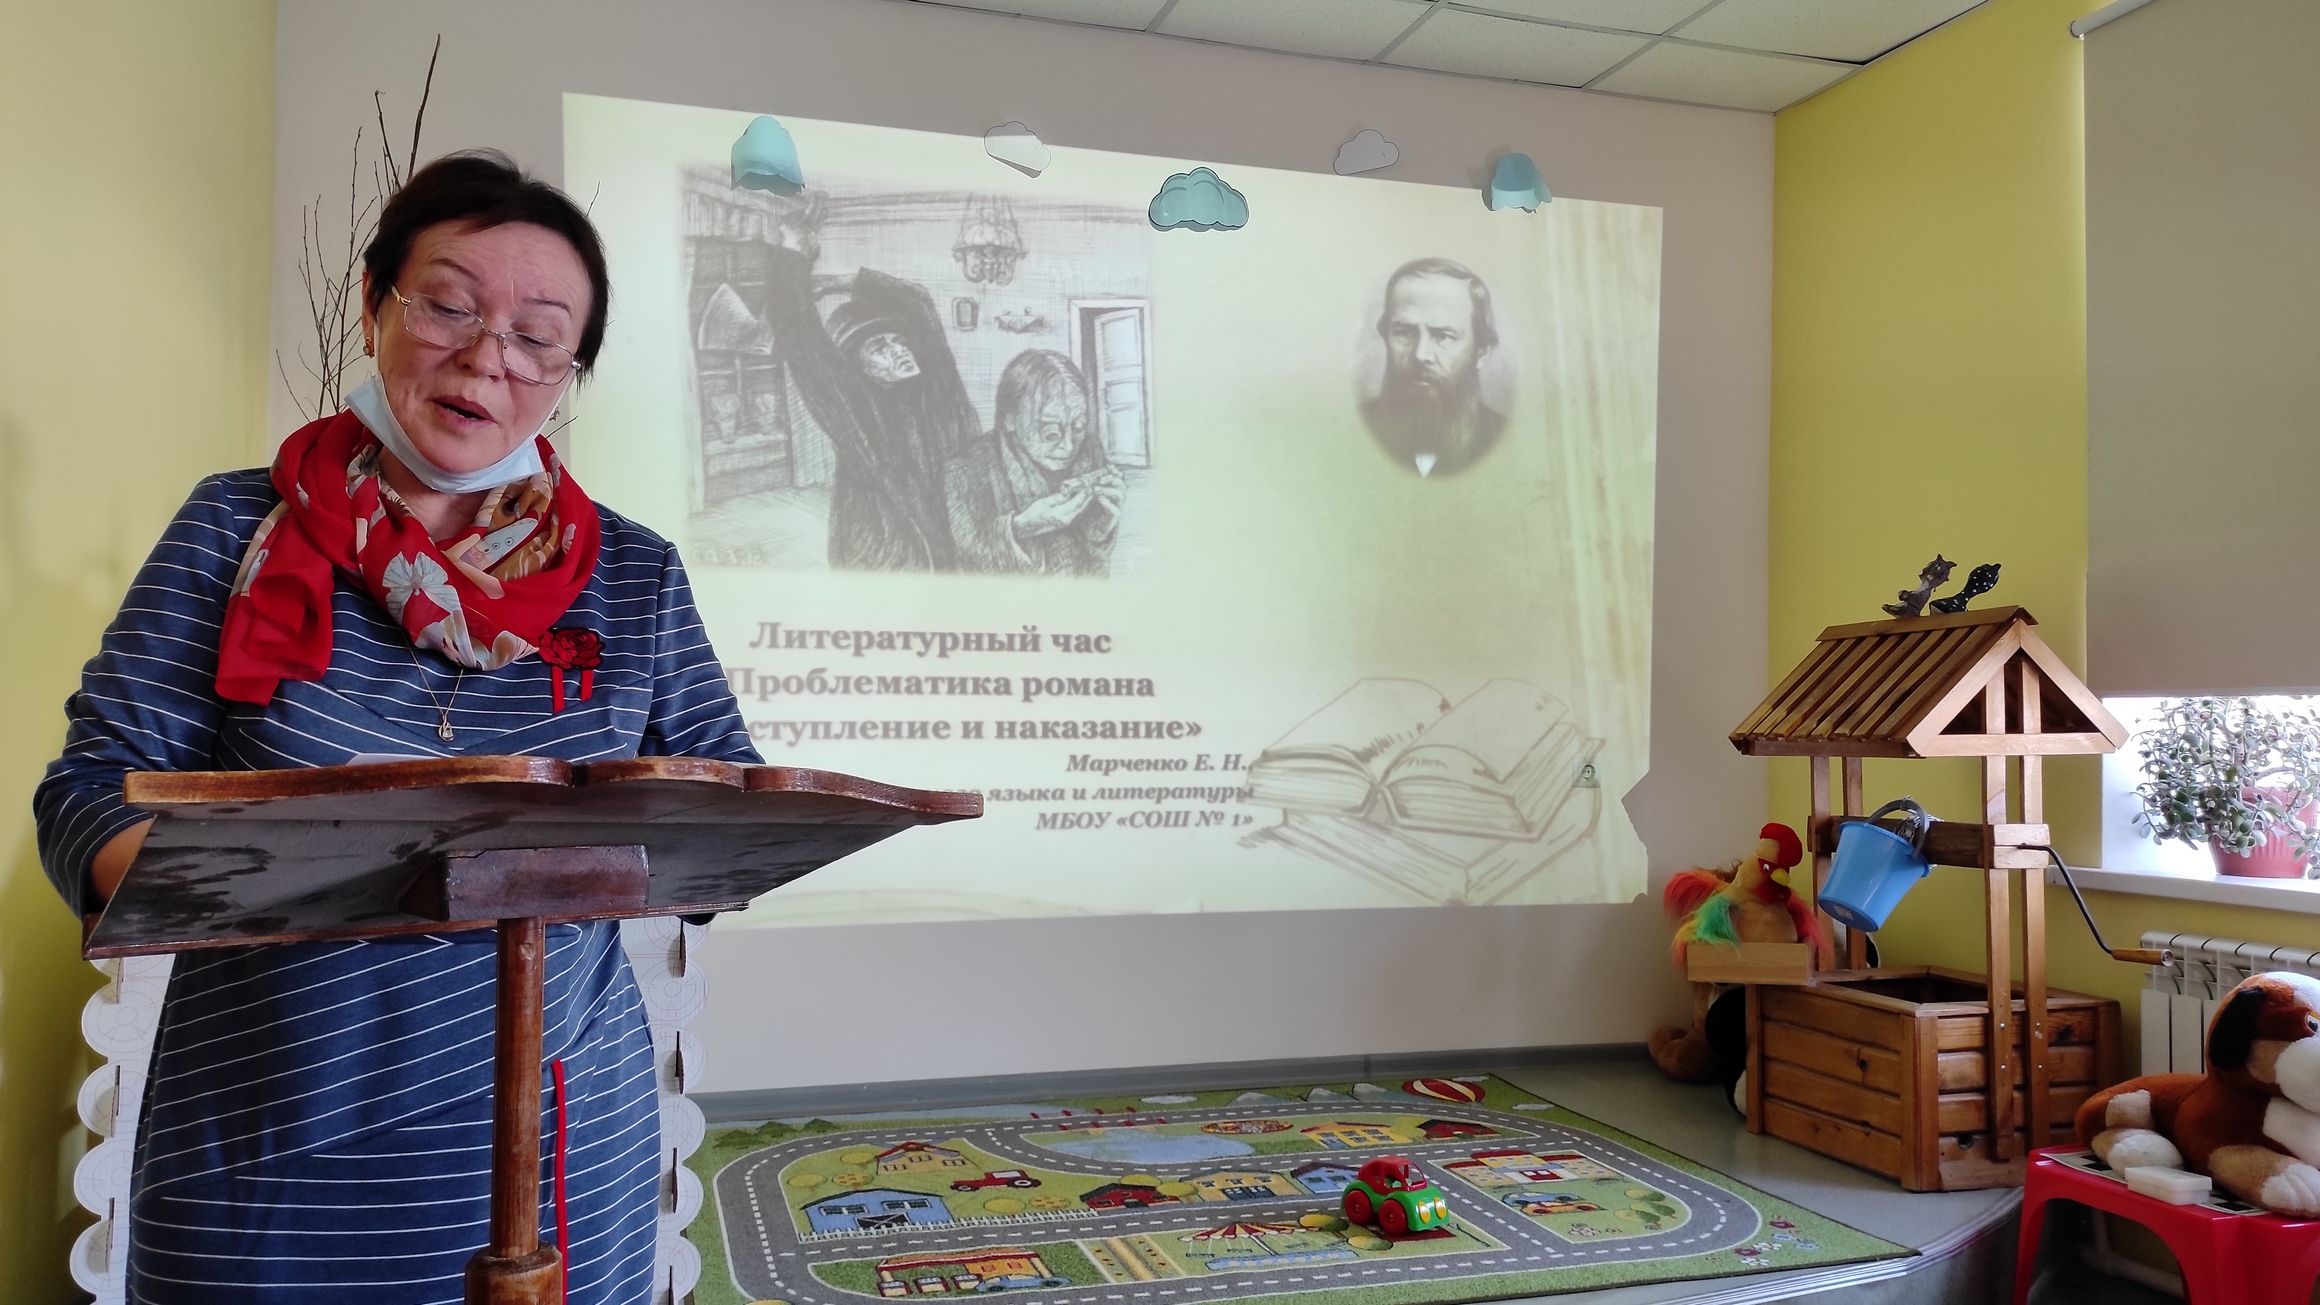 You are currently viewing Литературный семинар “Достоевский и его наследие”